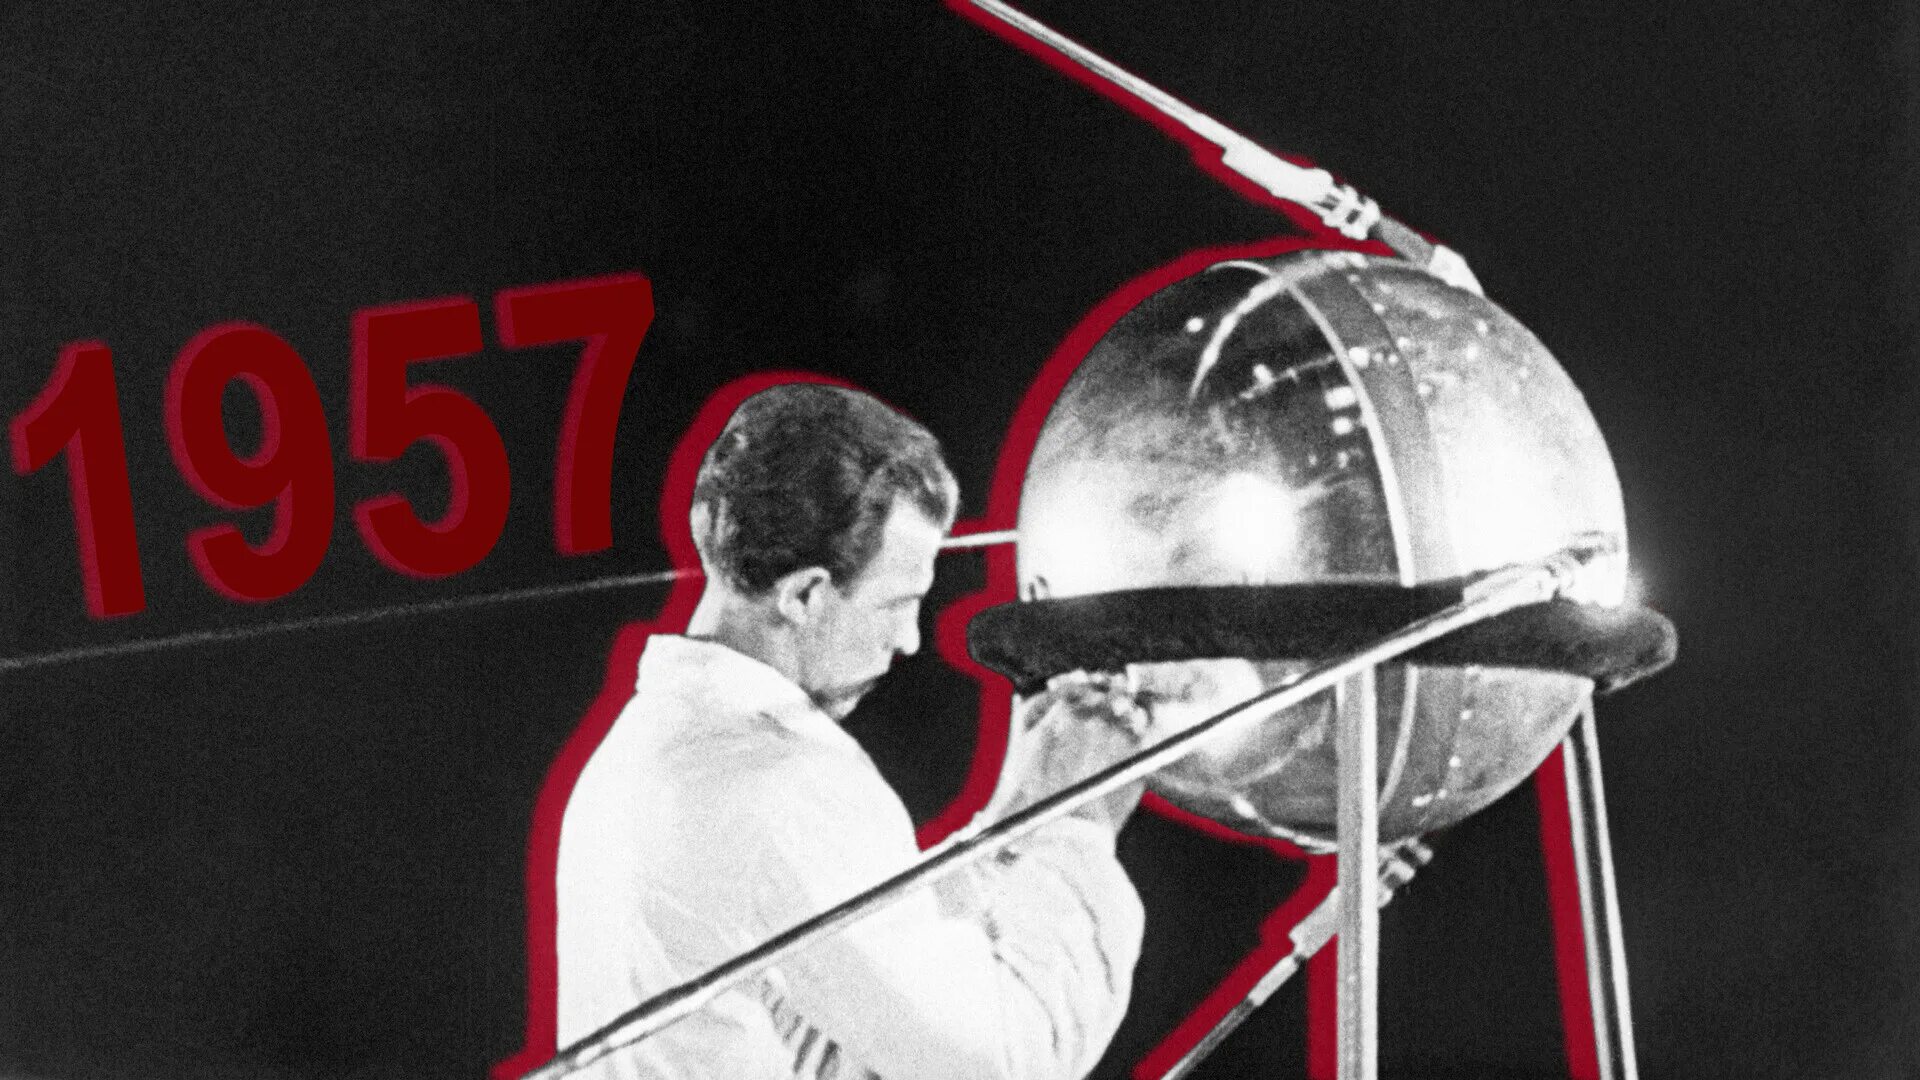 Спутник 1 первый искусственный Спутник земли. Первый Спутник земли запущенный 4 октября 1957 СССР. Первый Спутник земли СССР октябрь 1957. 4 Октября 1957-первый ИСЗ "Спутник" (СССР).. Какое имя носил 1 искусственный спутник земли